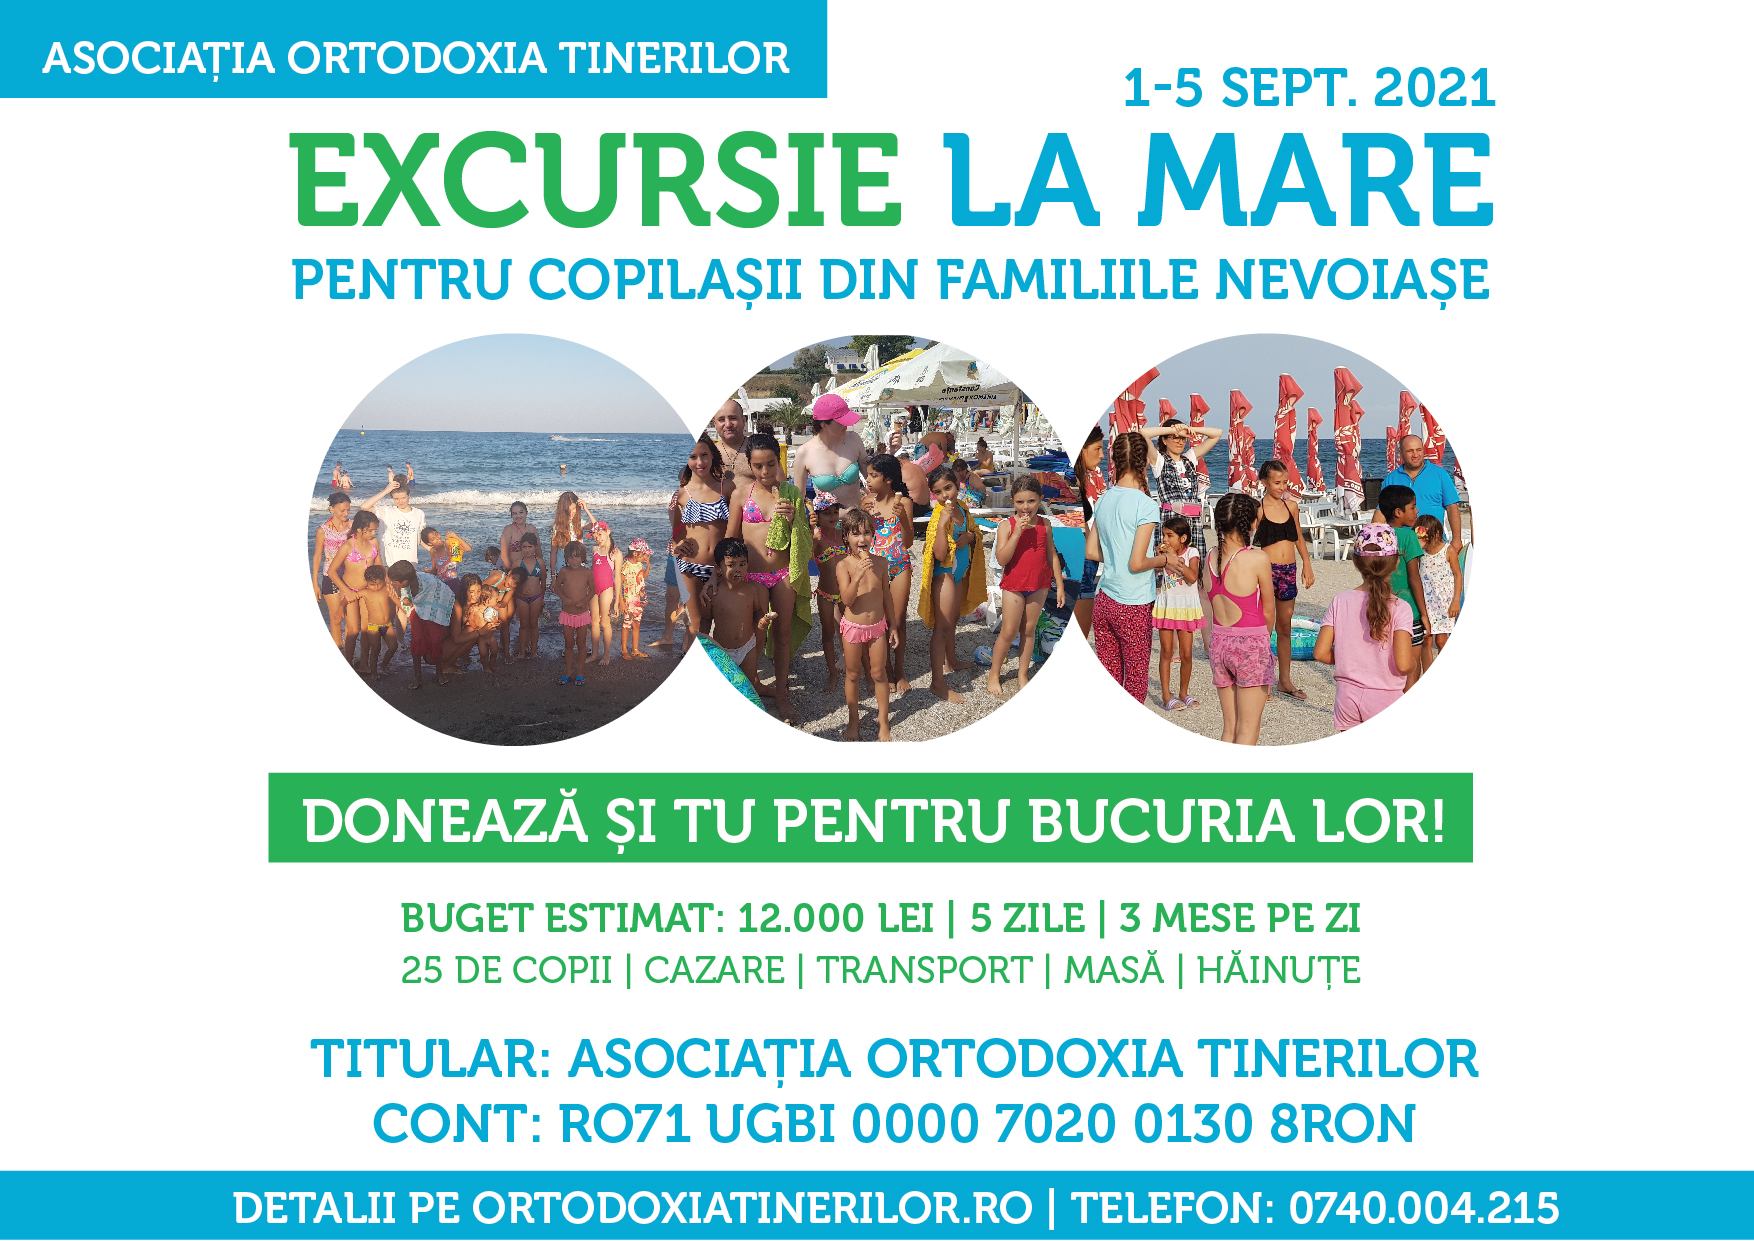 Excursie la mare pentru copilașii din familiile nevoiași (1-5 sept. 2021)